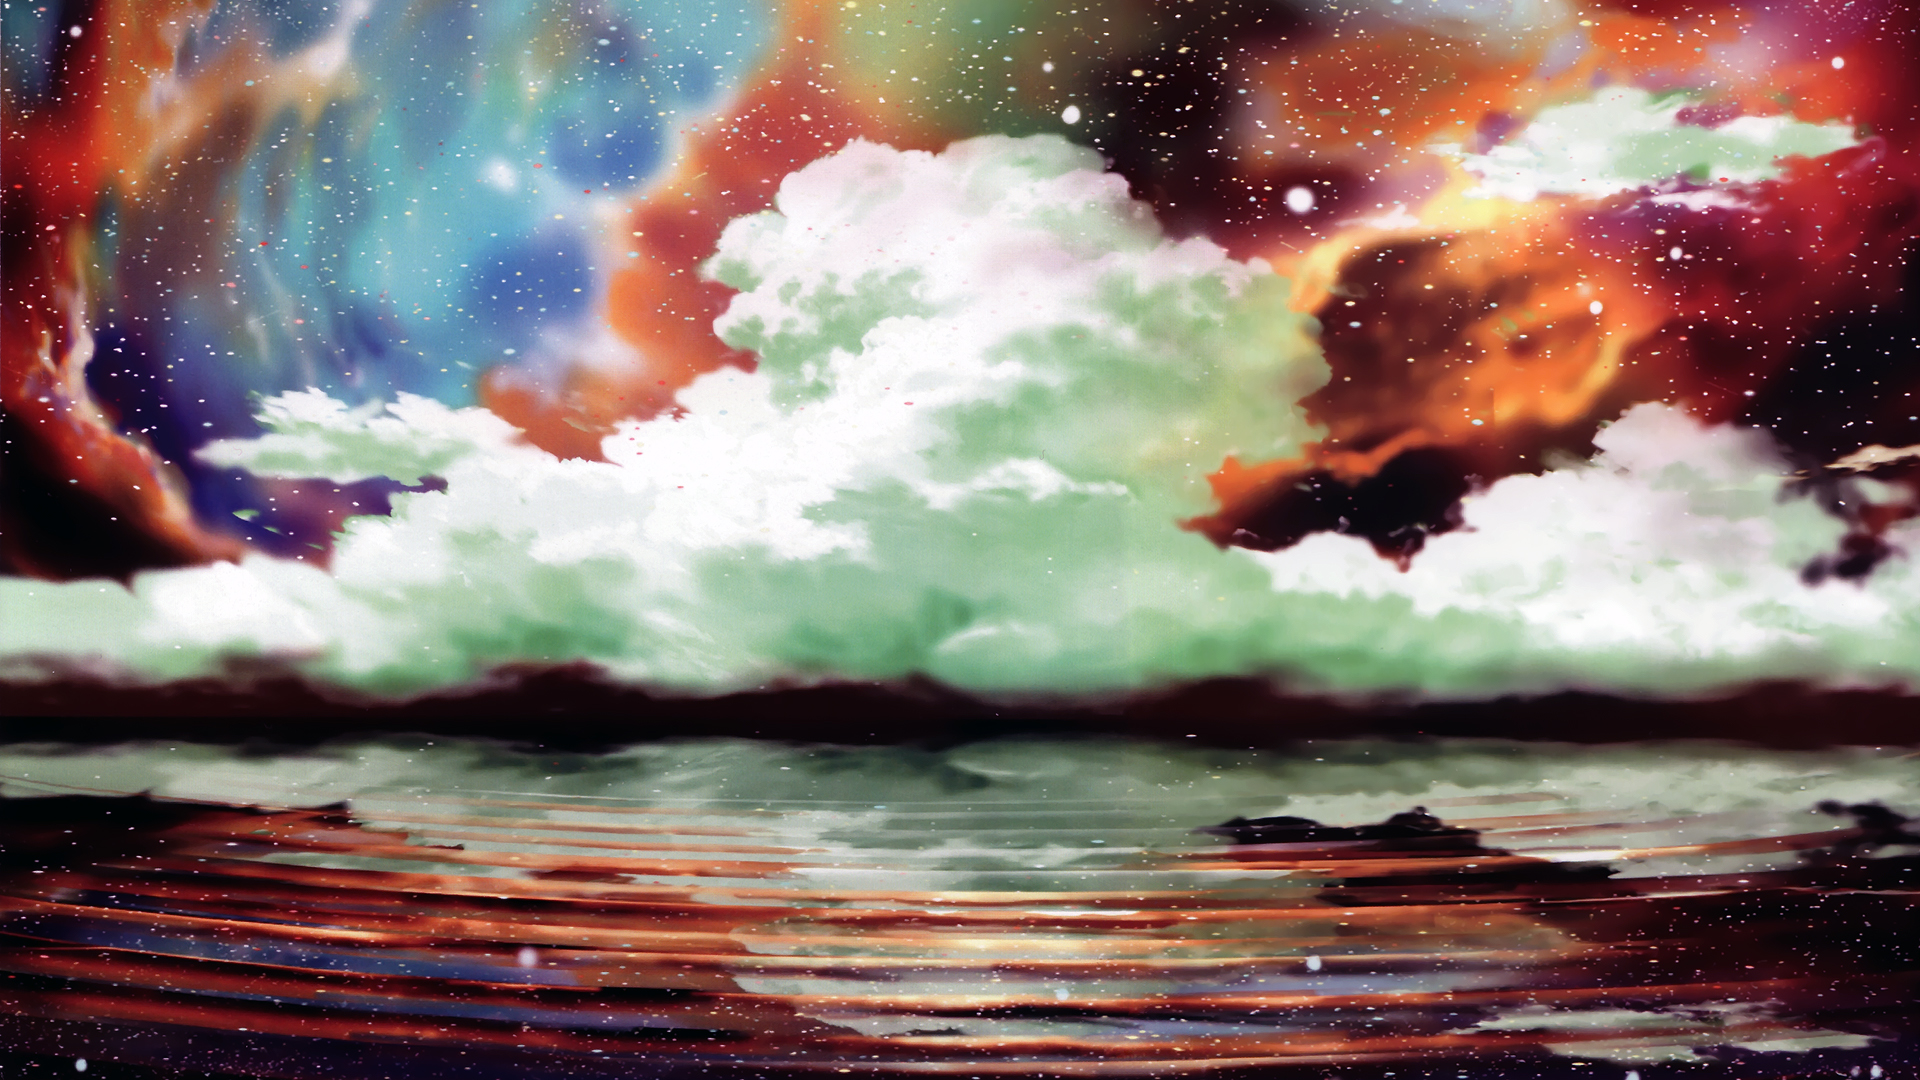 clouds, landscapes, artwork - desktop wallpaper